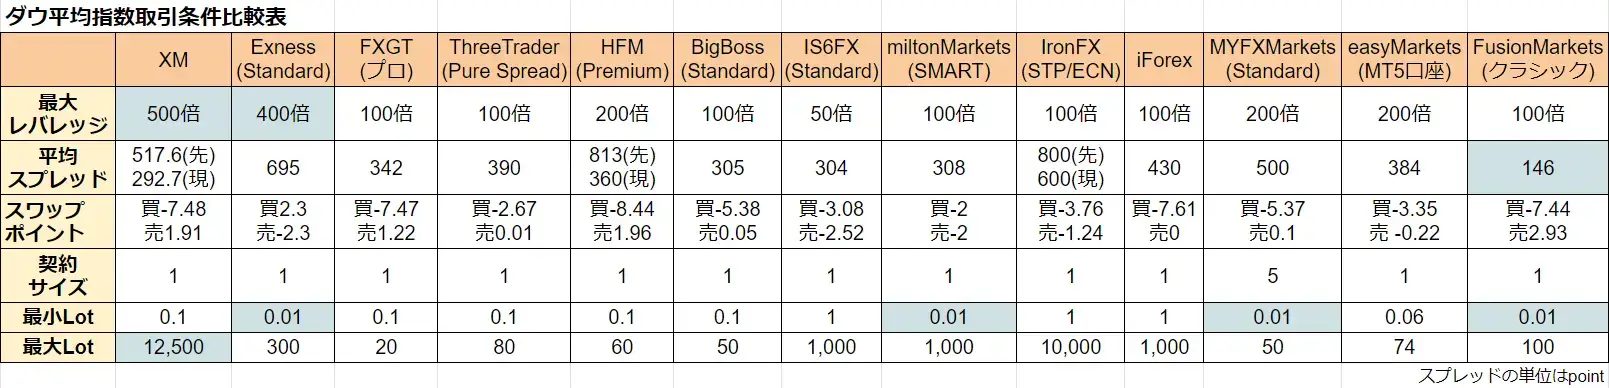 海外FXのダウ平均CFD取引条件比較画像